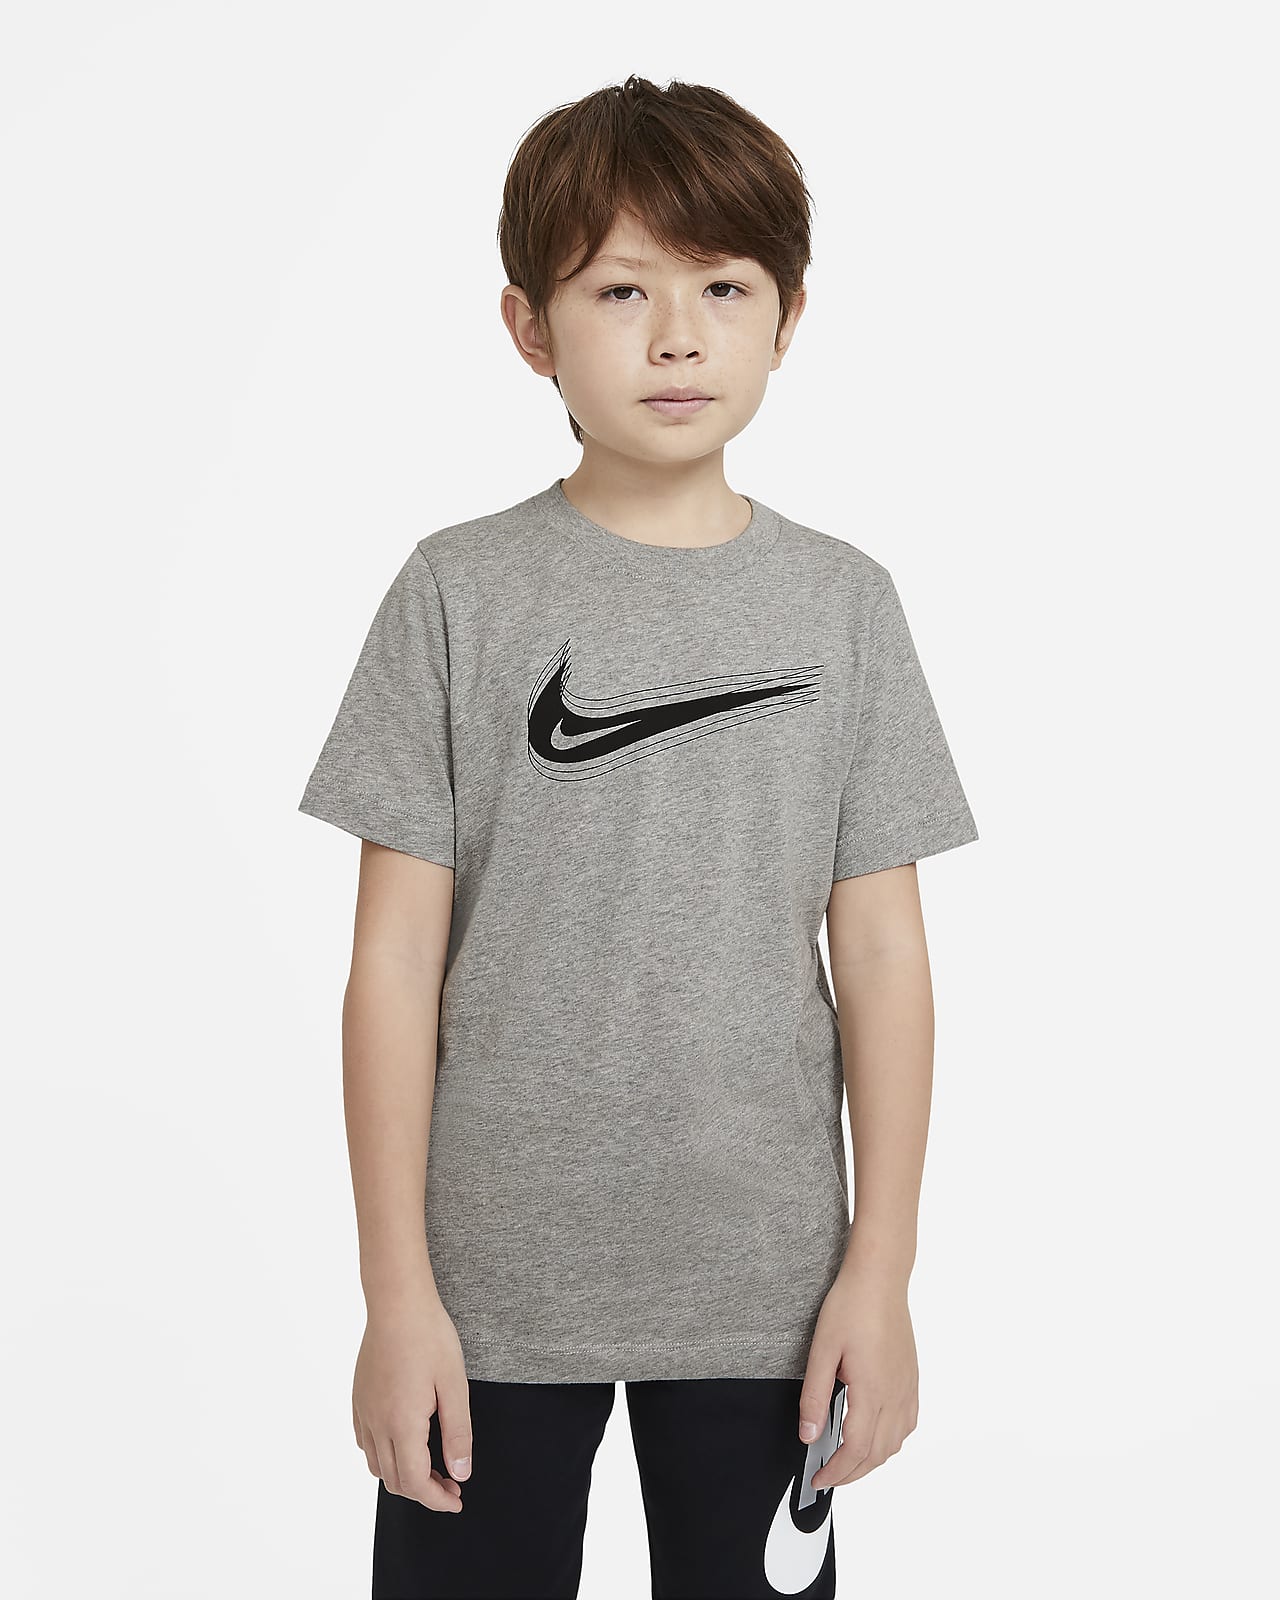 Nike Sportswear Camiseta con Swoosh - Niño/a